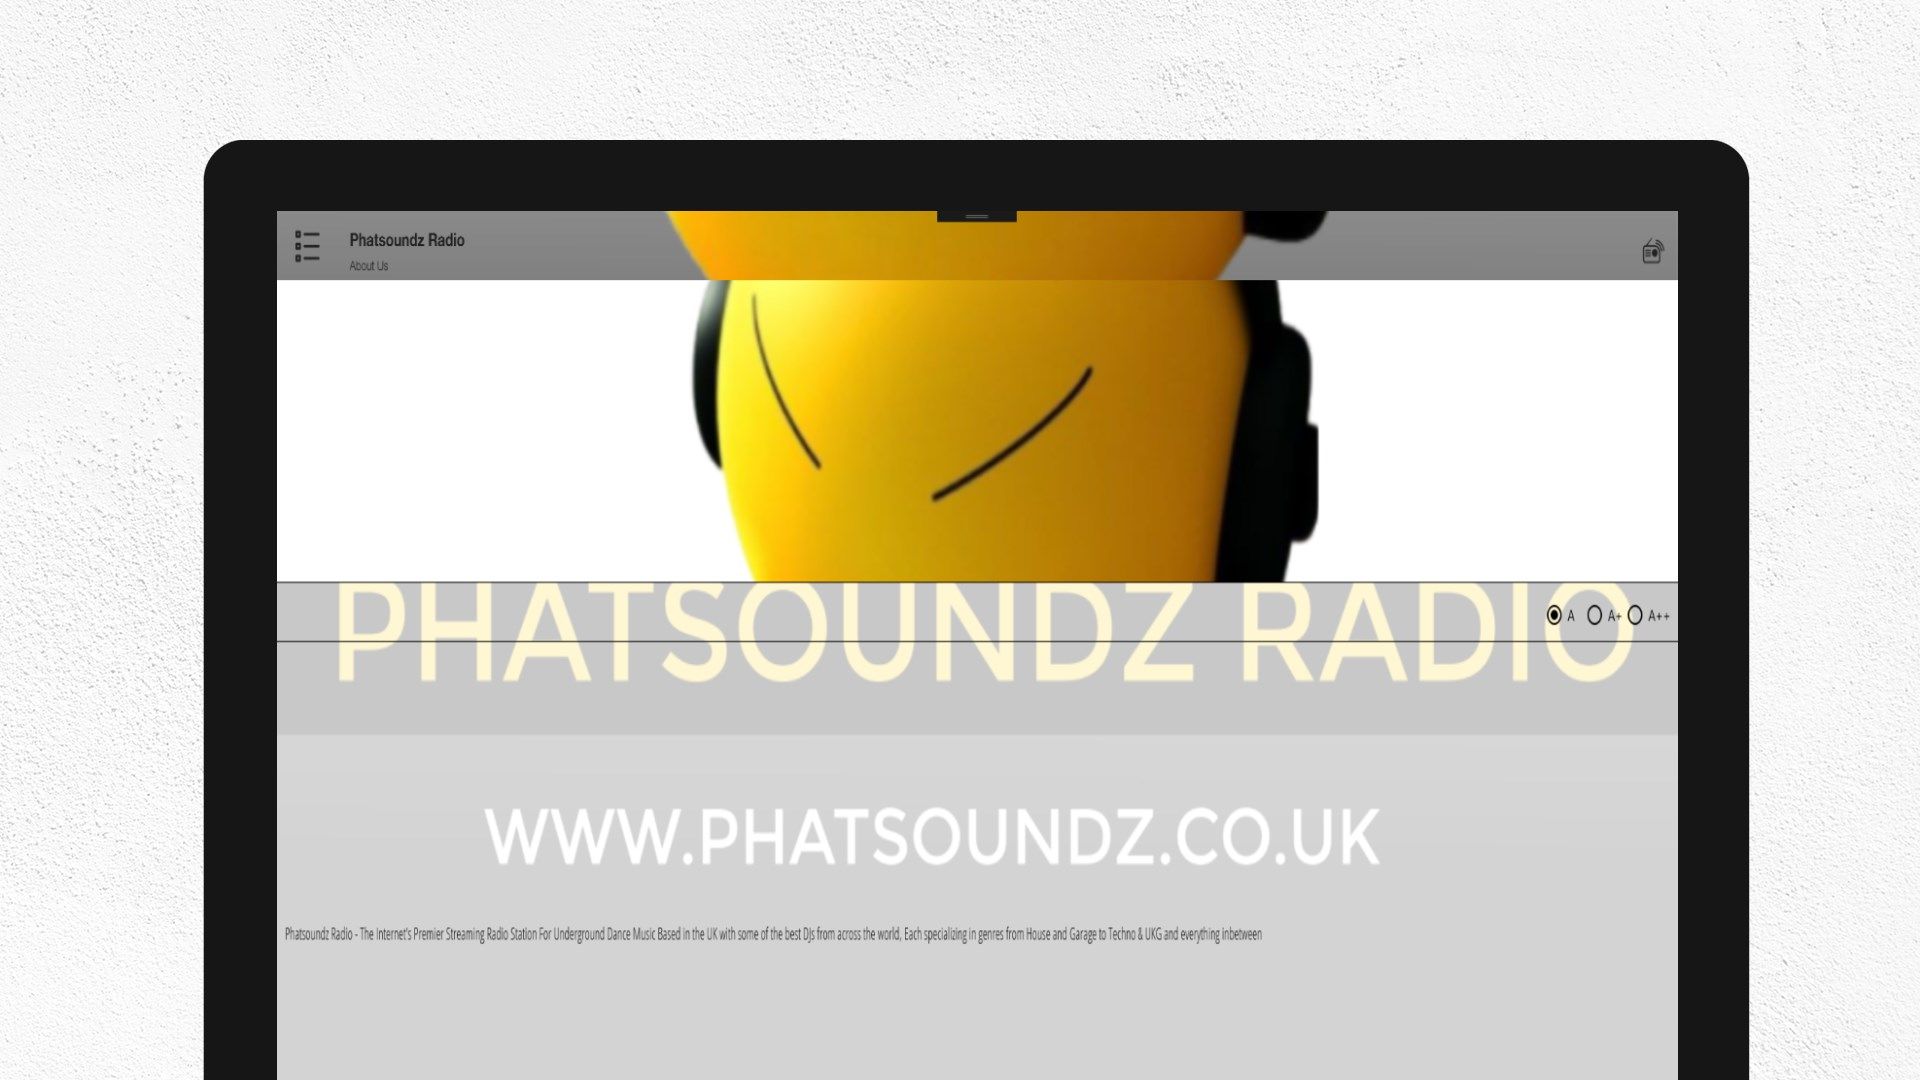 Phatsoundz Radio